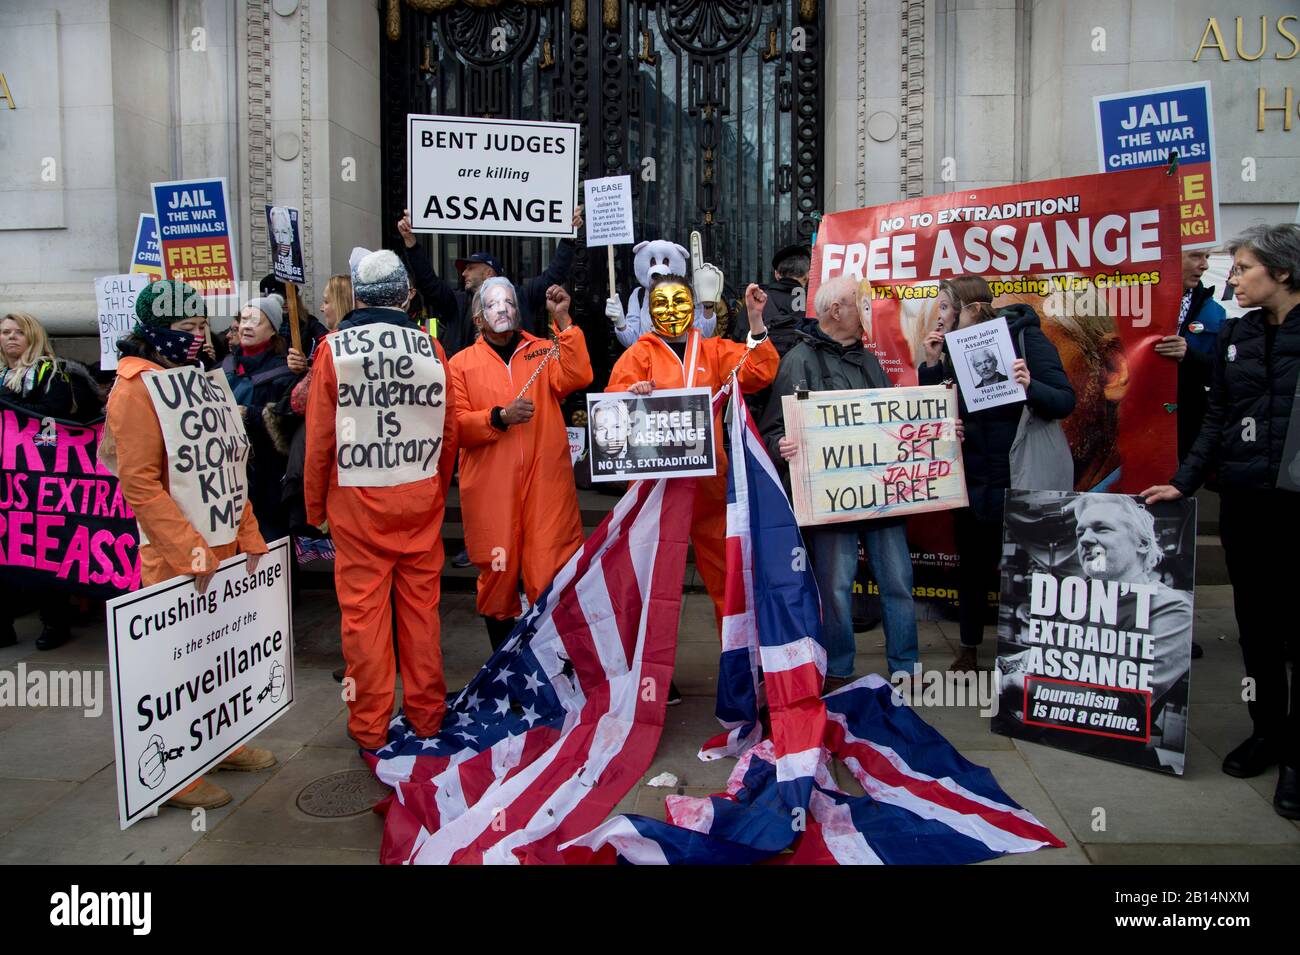 Londres 22 de febrero de 2020. Manifestación frente a la Embajada de Australia para oponerse a la extradición a los Estados Unidos de Julian Assange, que se encuentra en la prisión de Belmarsh Foto de stock